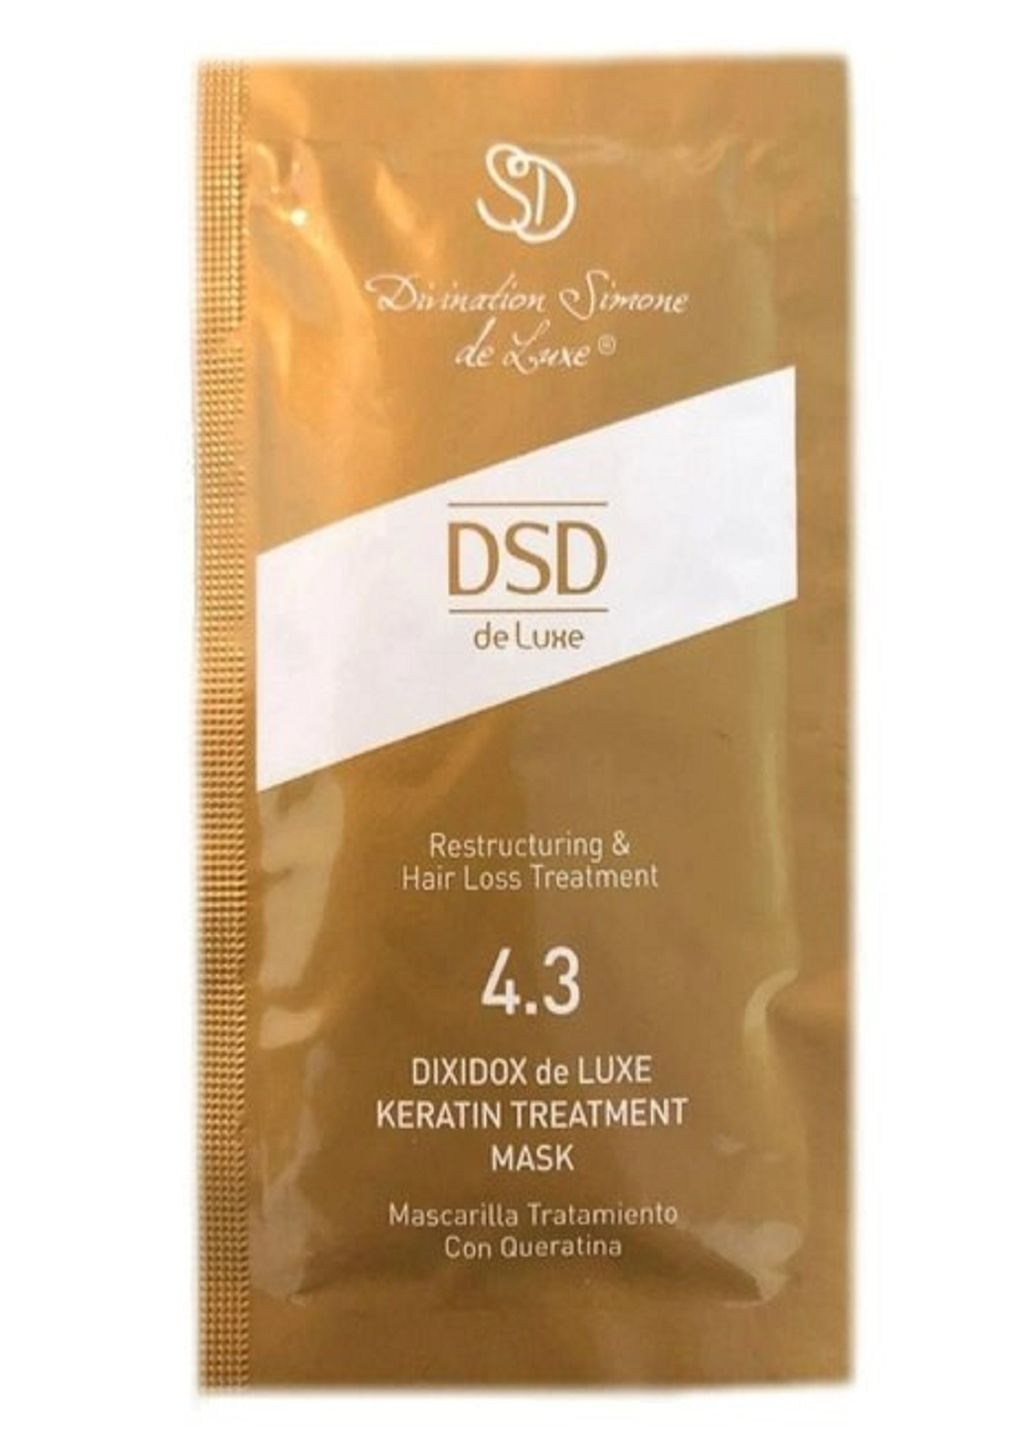 Восстанавливающая маска с кератином Диксидокс Де Люкс № 4.3 Simone Dixidox DeLuxe Keratin Treatment Mask DSD de Luxe (262292325)